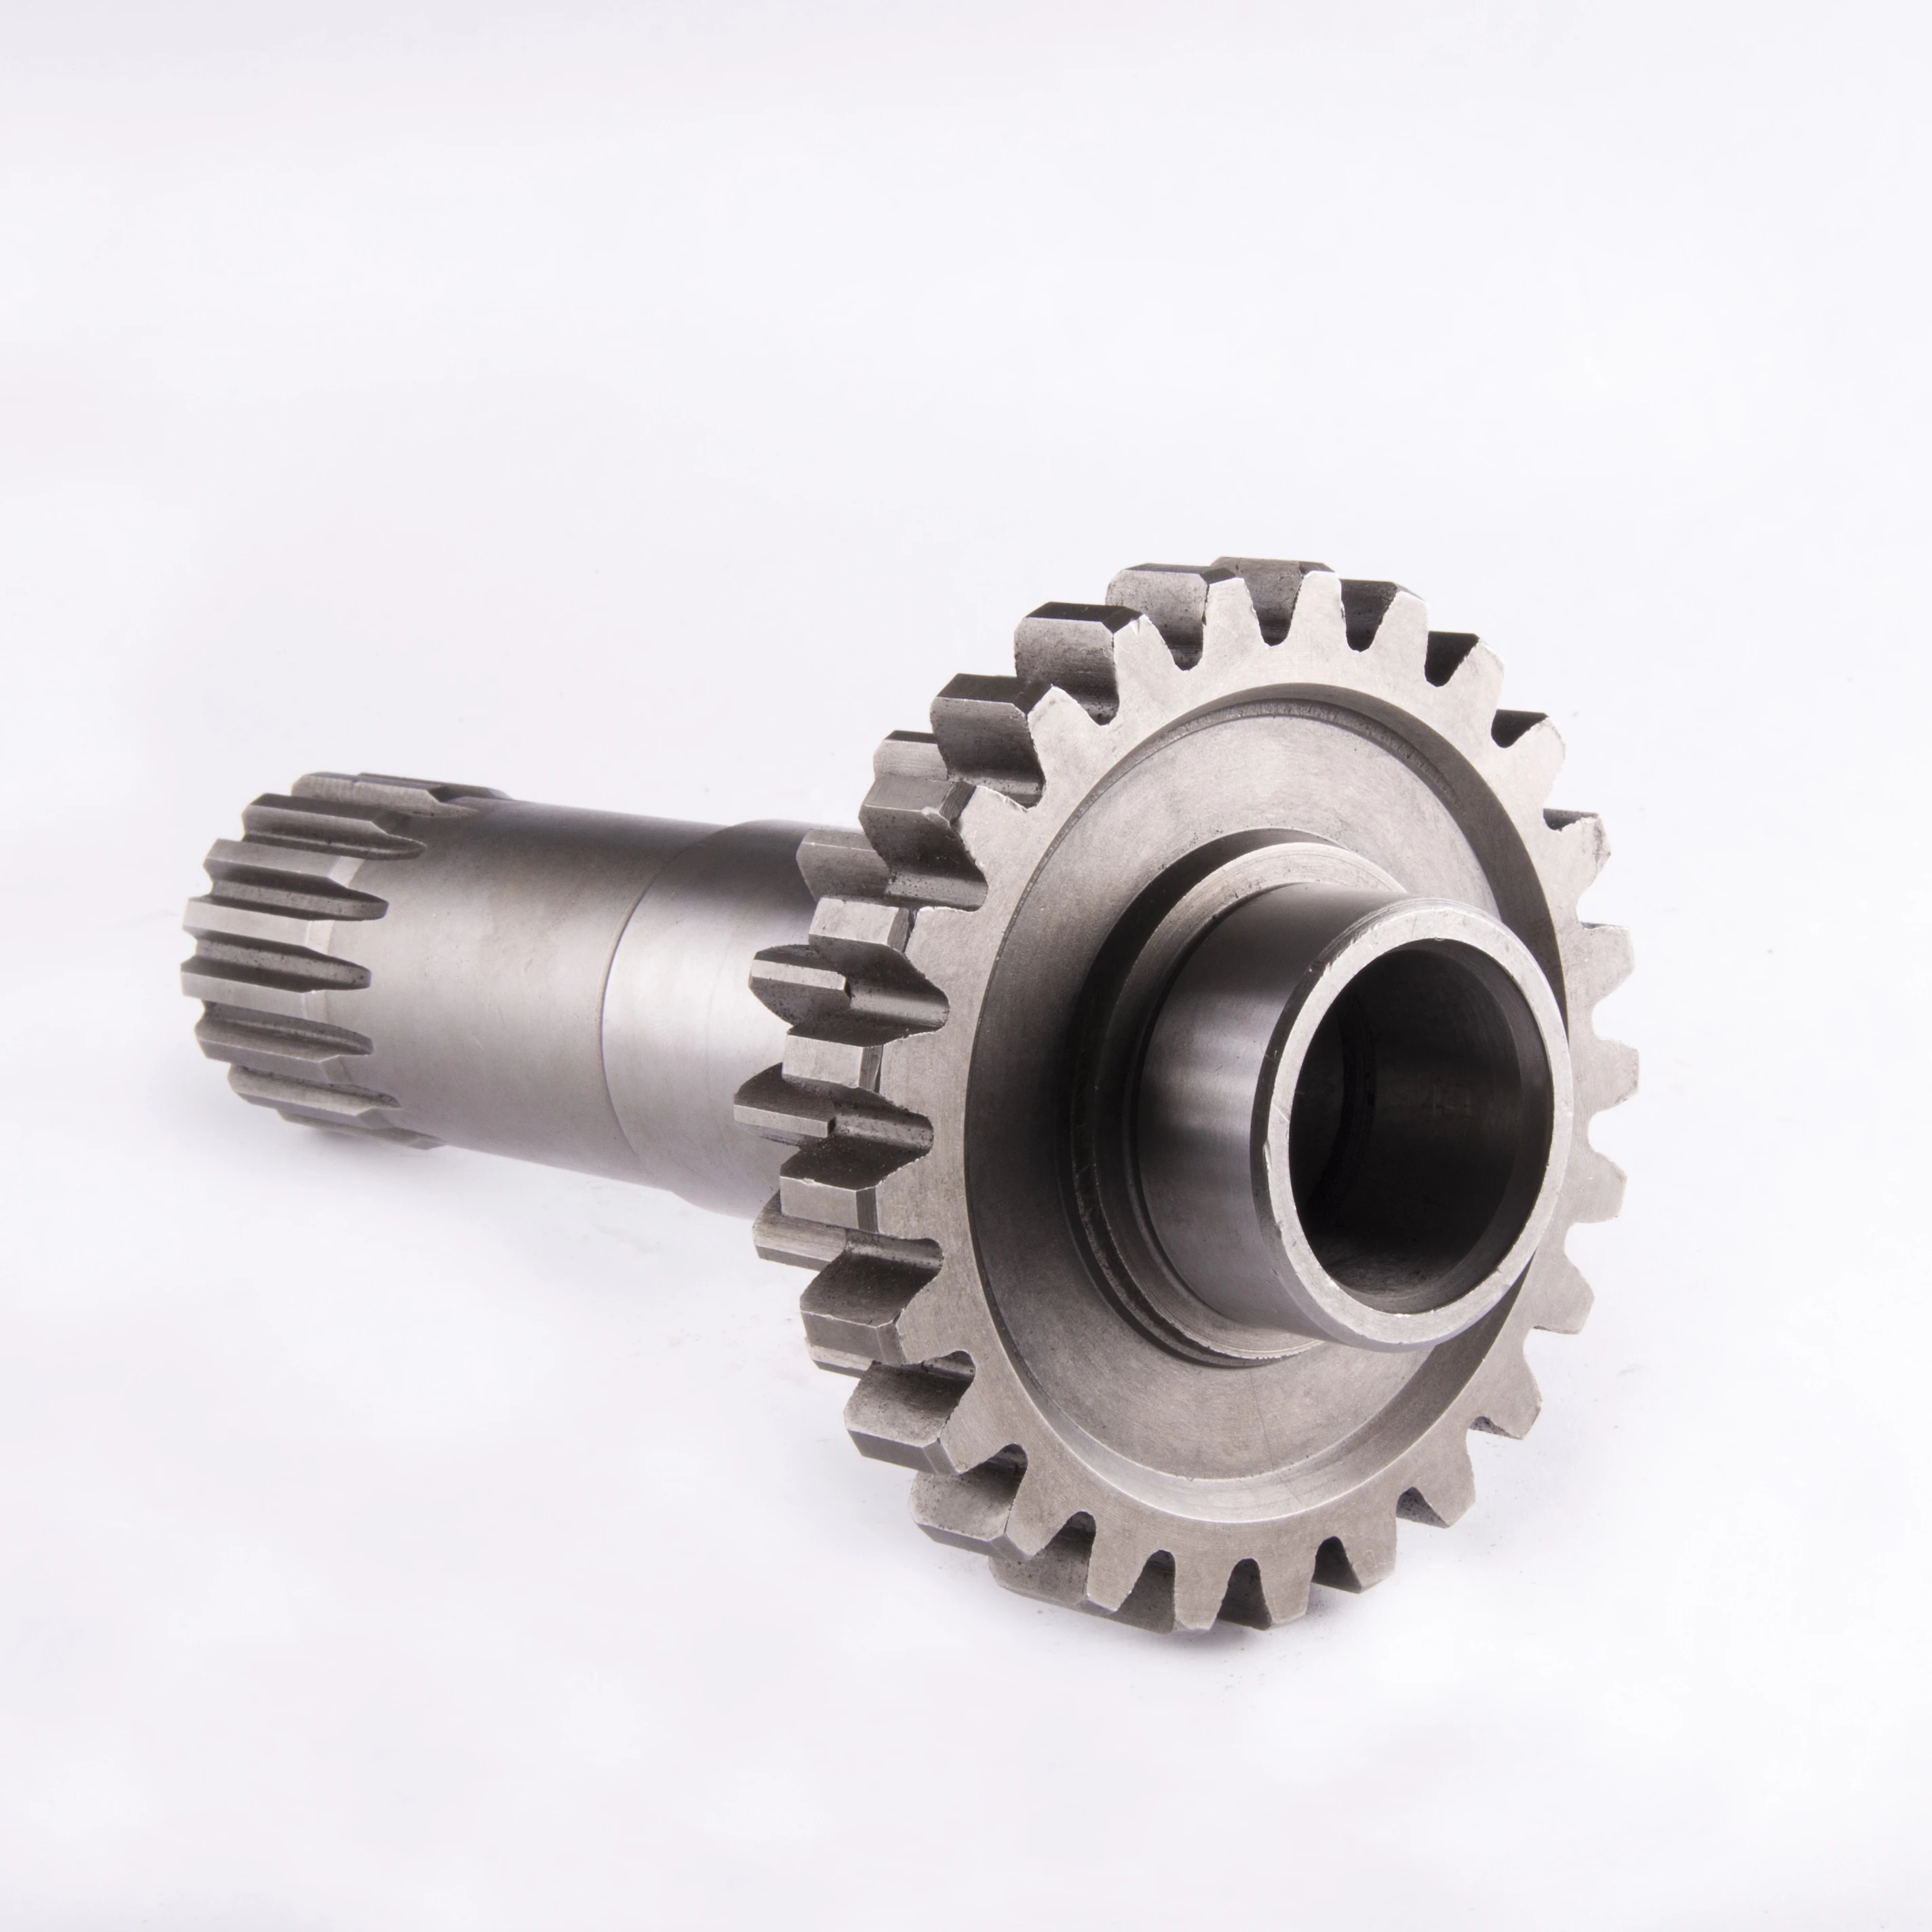 MTZ Gear shaft used in gearbox OEM 70-1601026 Z=18:25